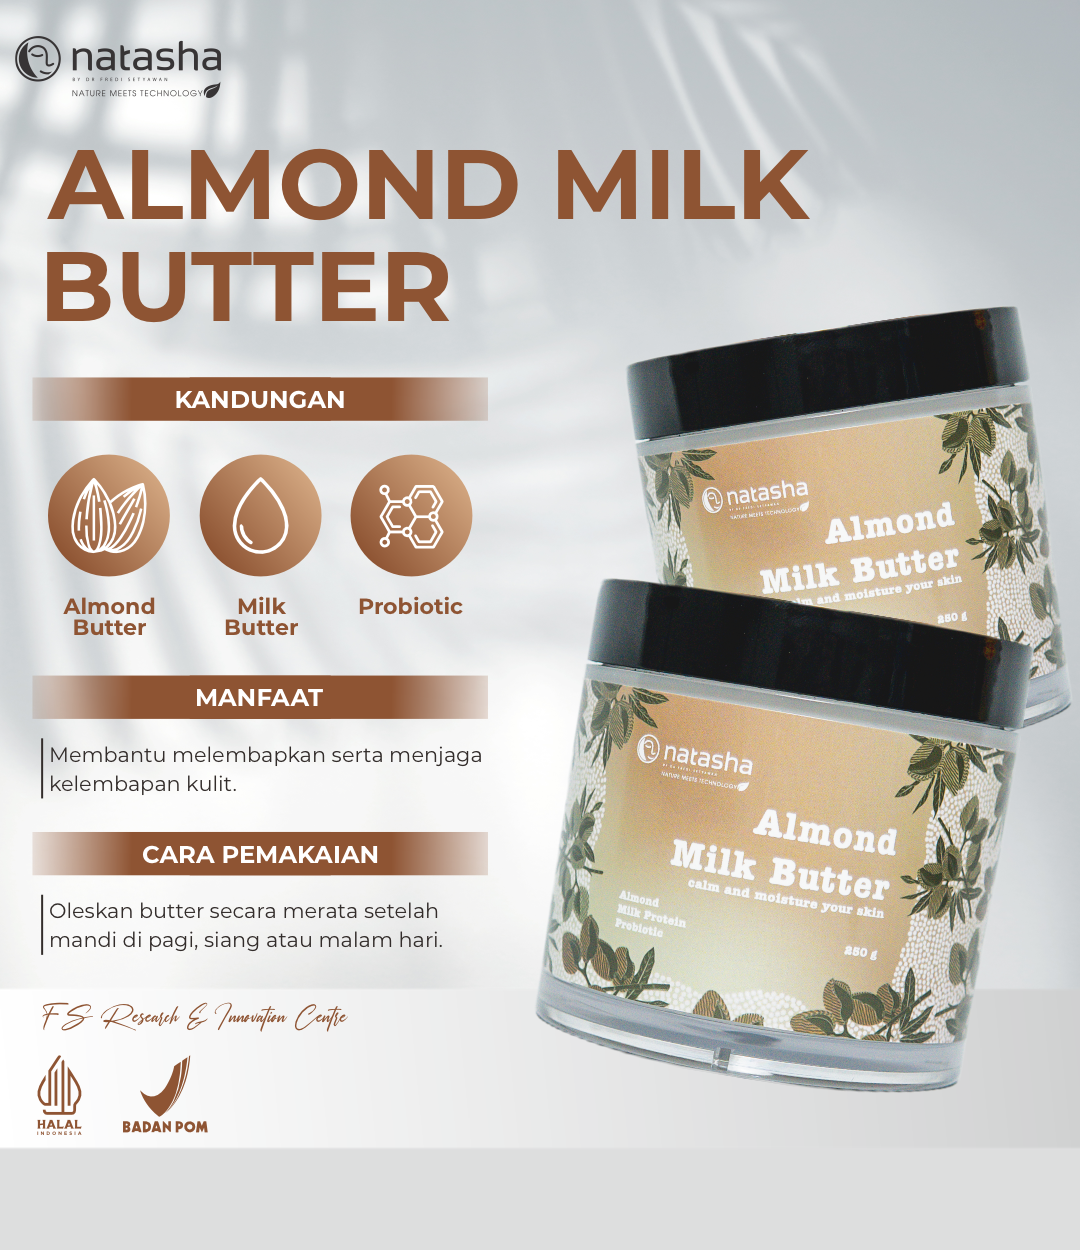 Almond Milk Butter